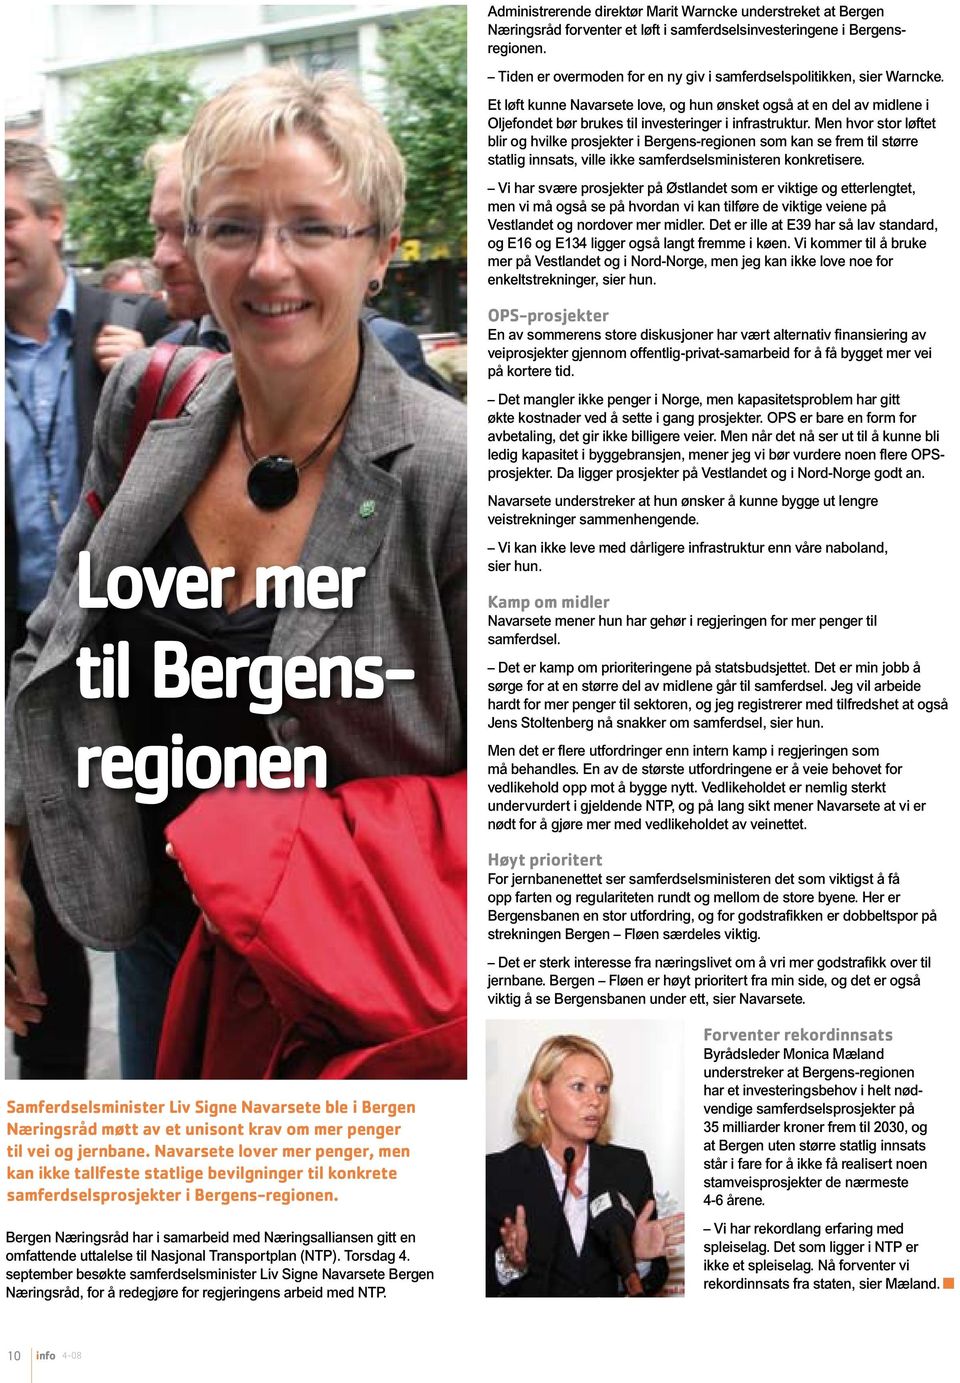 Men hvor stor løftet blir og hvilke prosjekter i Bergens-regionen som kan se frem til større statlig innsats, ville ikke samferdselsministeren konkretisere.